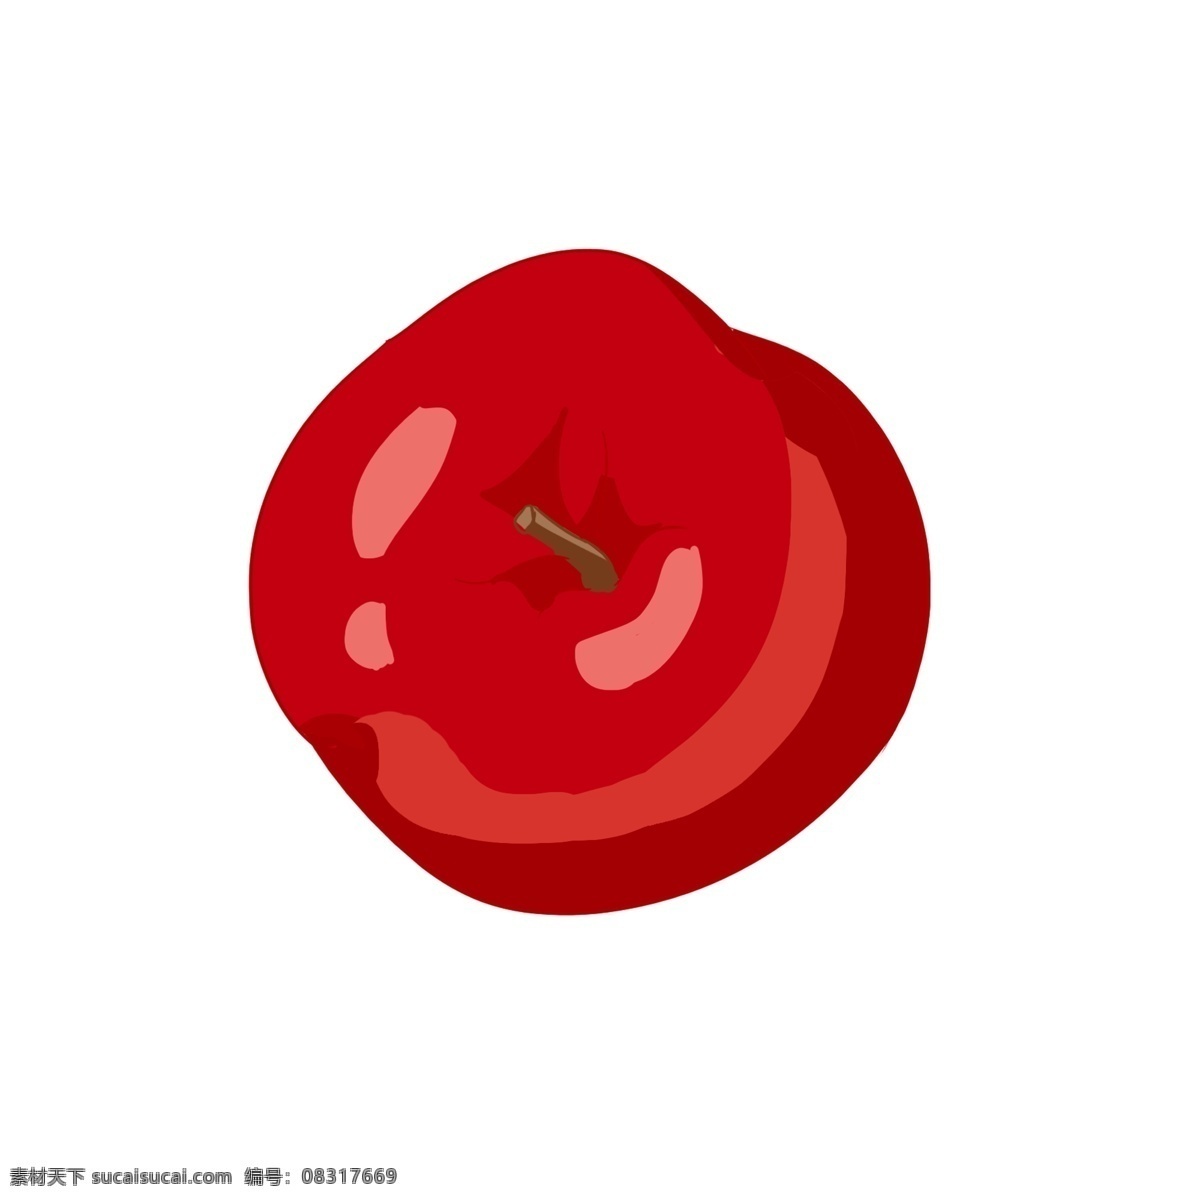 手绘 水果 红色 苹果 一个 整个 深红色 叶子 浅色 粉色 中国风画法 水果之王 装饰 贴画